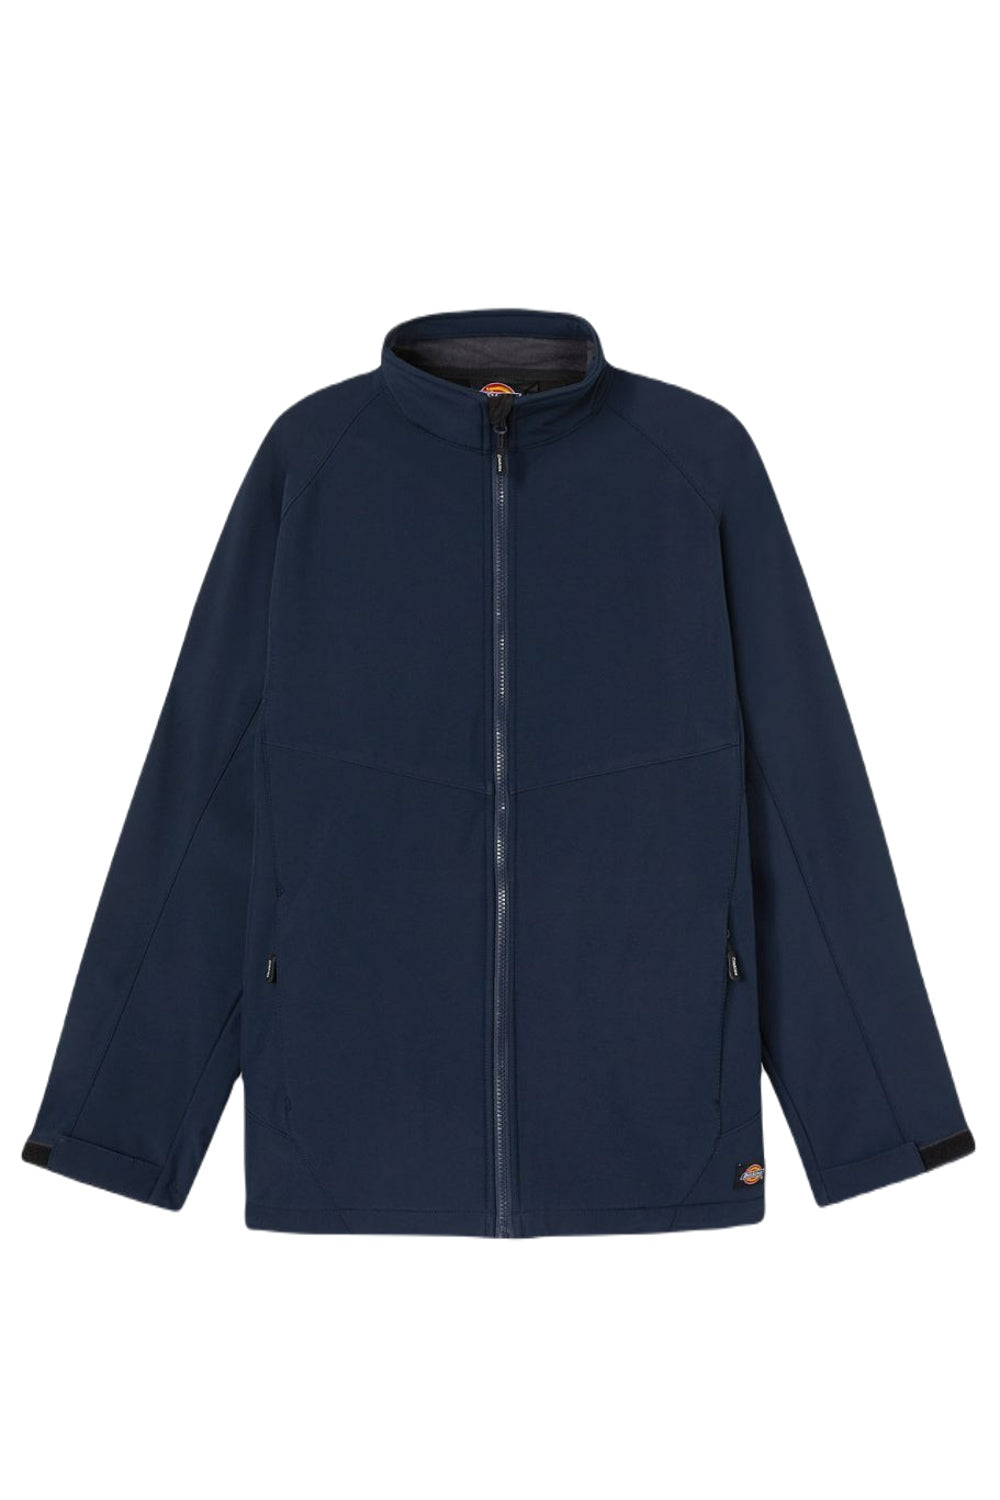 Dickies Softshell Waterproof Jacket in Navy Blue